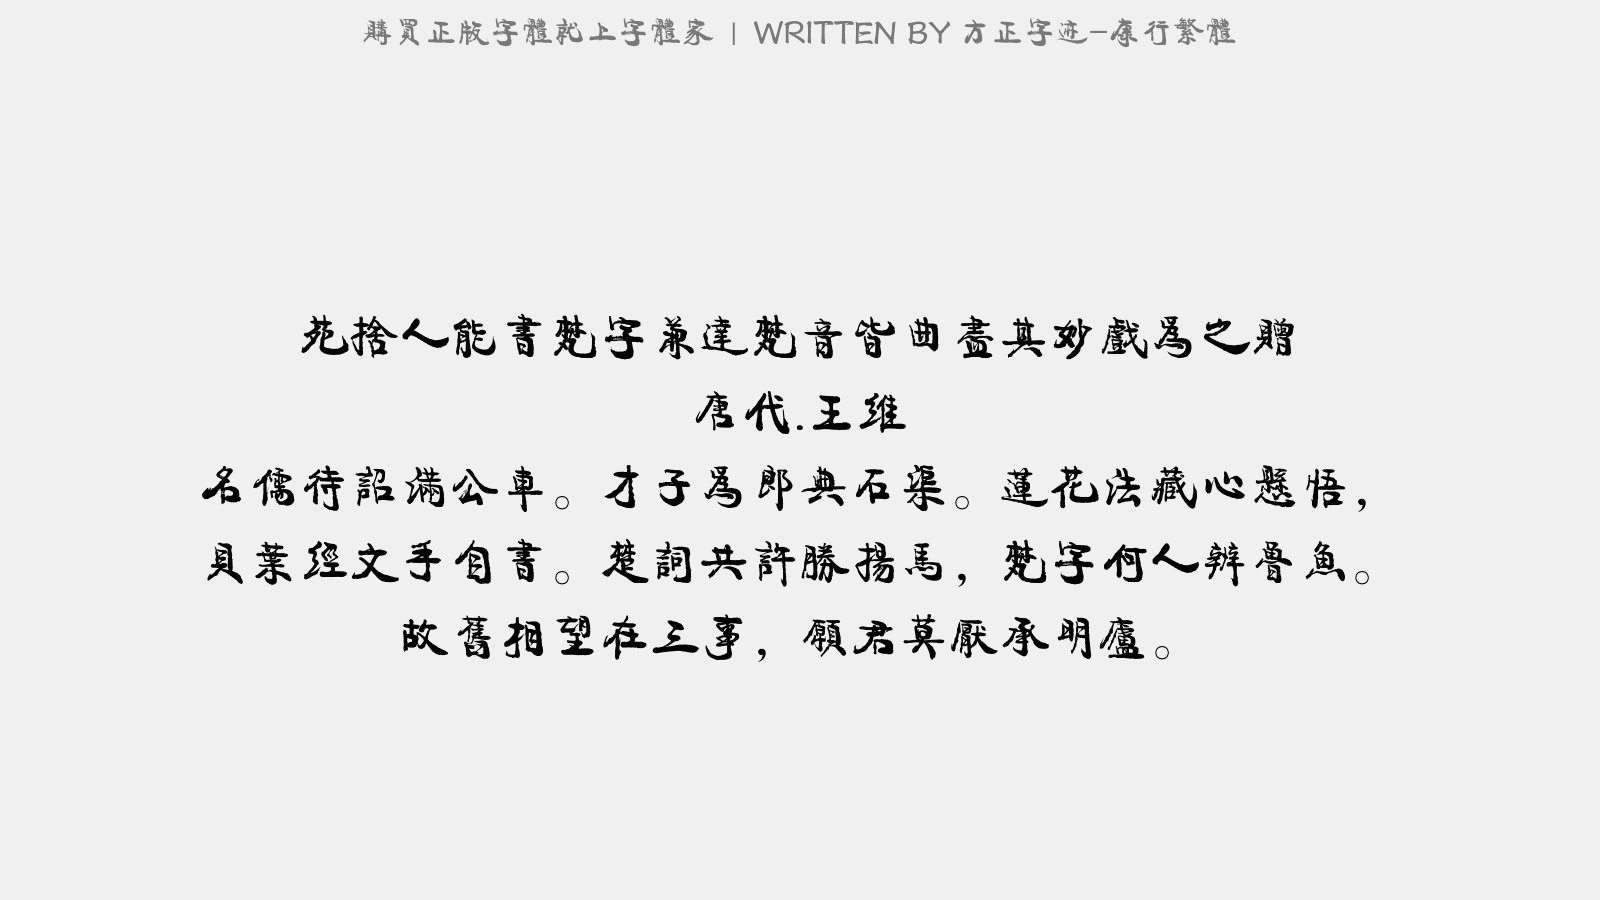 方正字迹 康行繁体免费字体下载 中文字体免费下载尽在字体家